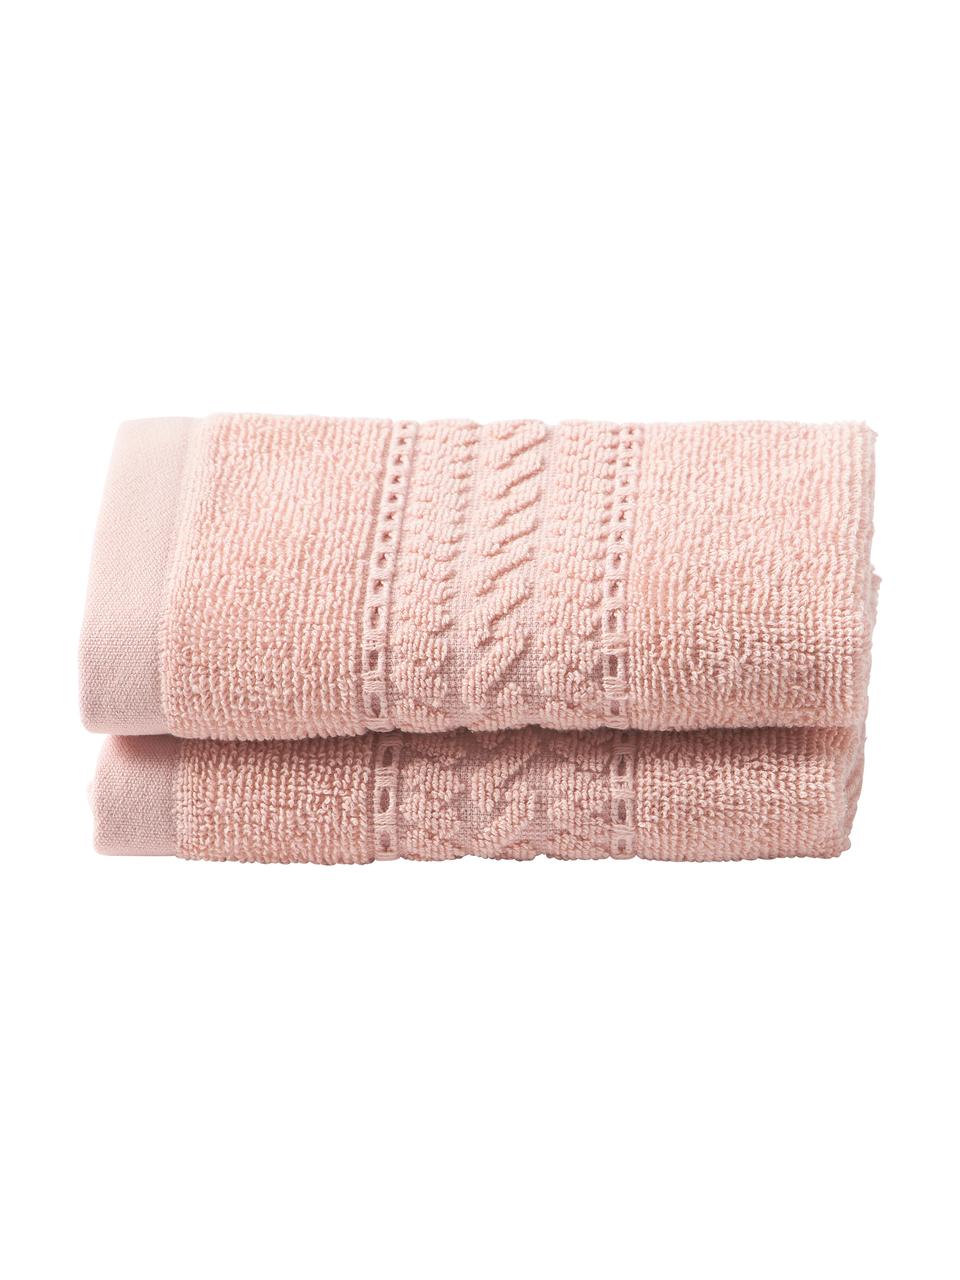 Ręcznik dla gości Cordelia, 2 szt., Blady różowy, Ręcznik dla gości, S 30 x D 50 cm, 2 szt.